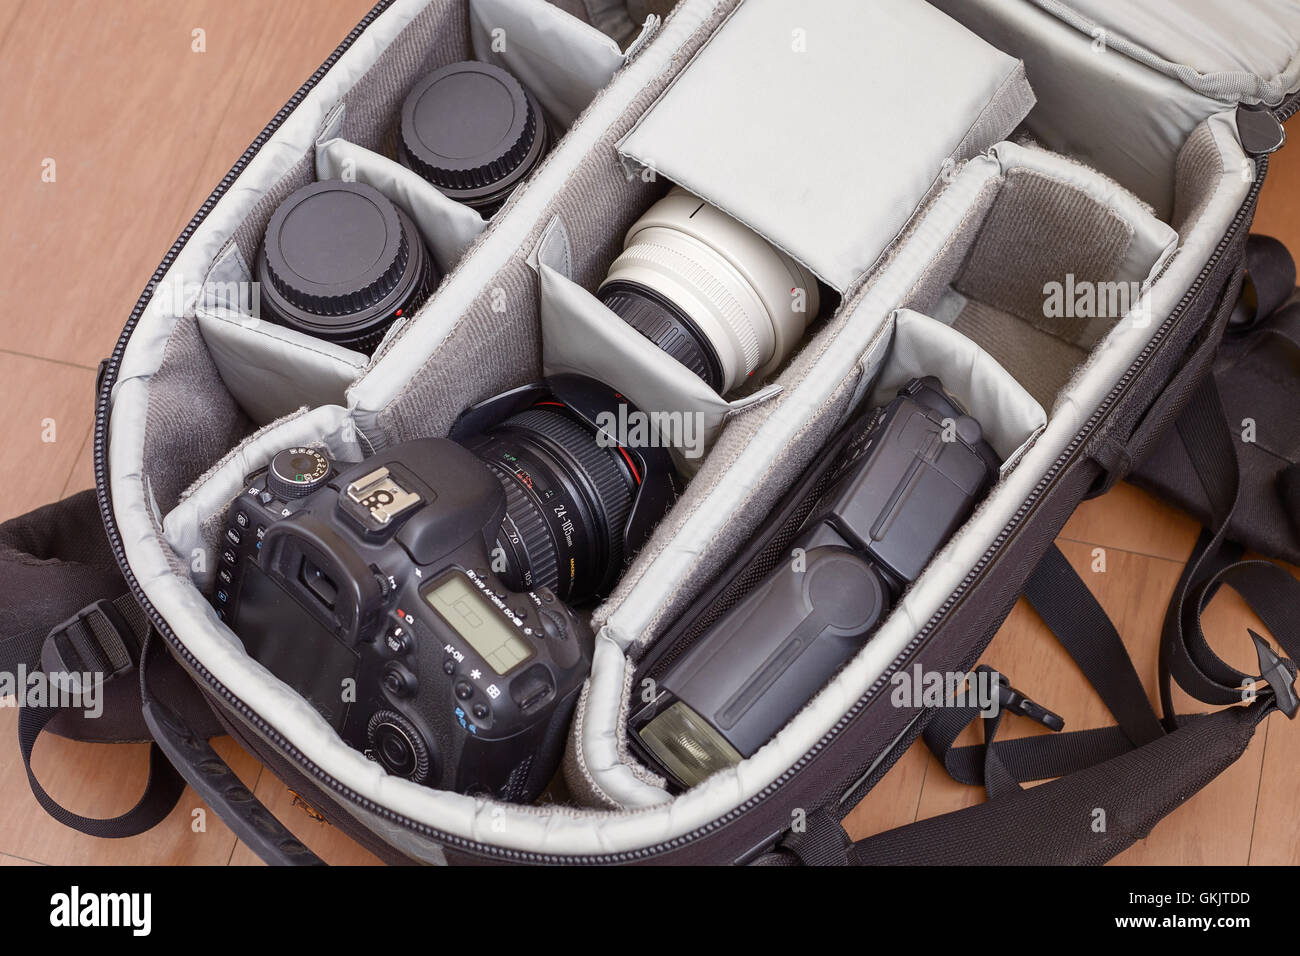 Fotografia professionale attrezzature in uno zaino di protezione Foto Stock